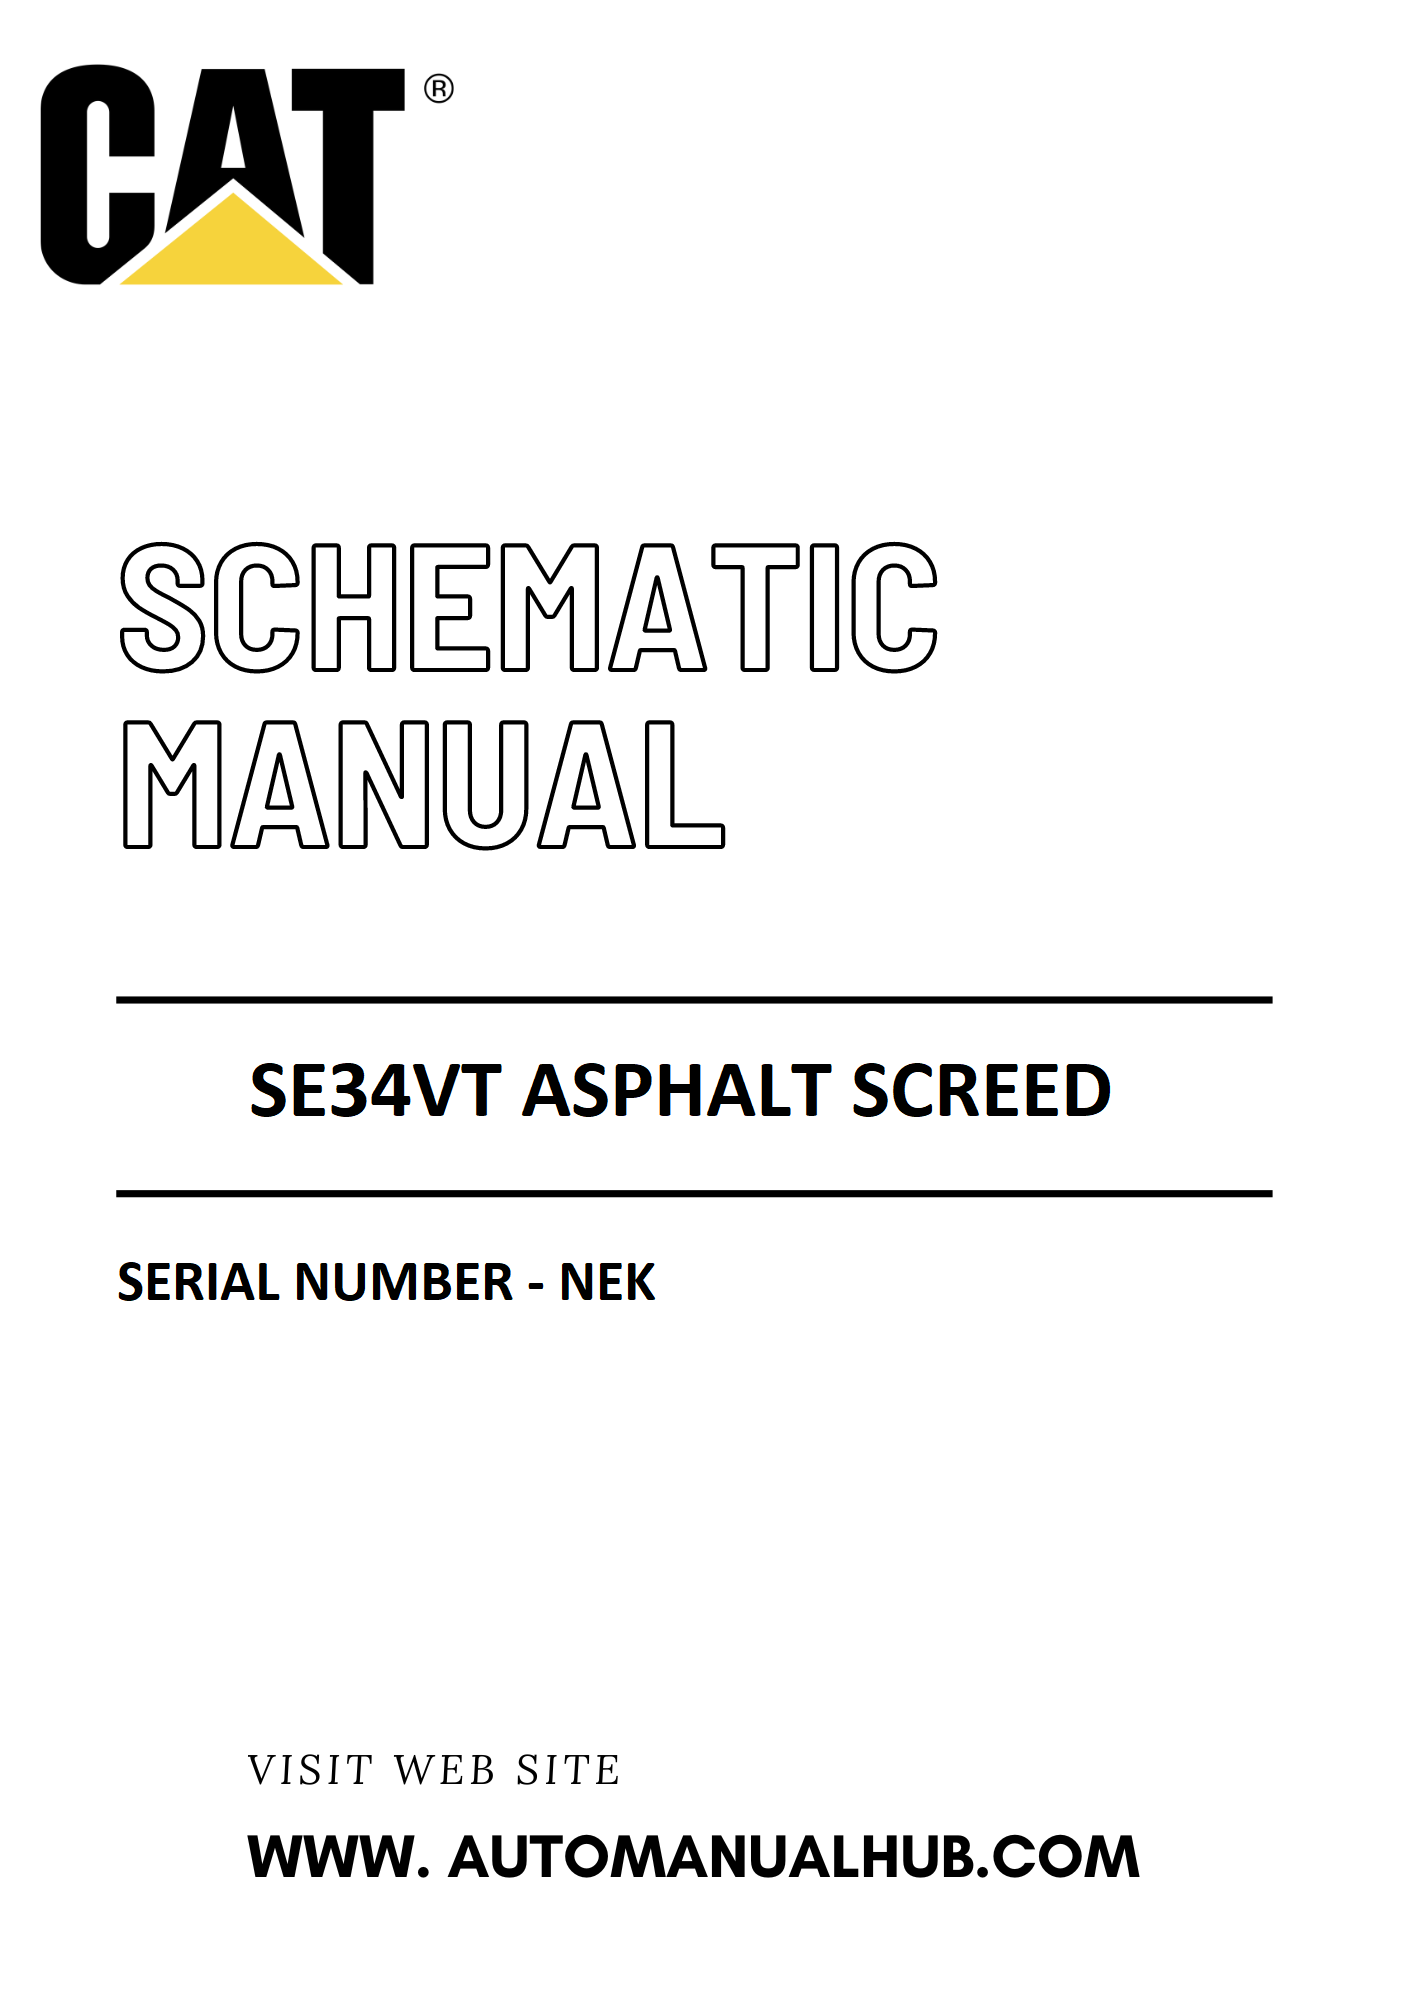 Cat Caterpillar SE34VT Asphalt Screed Schematic Diagram Manual Serial Number - NEK PDF Download